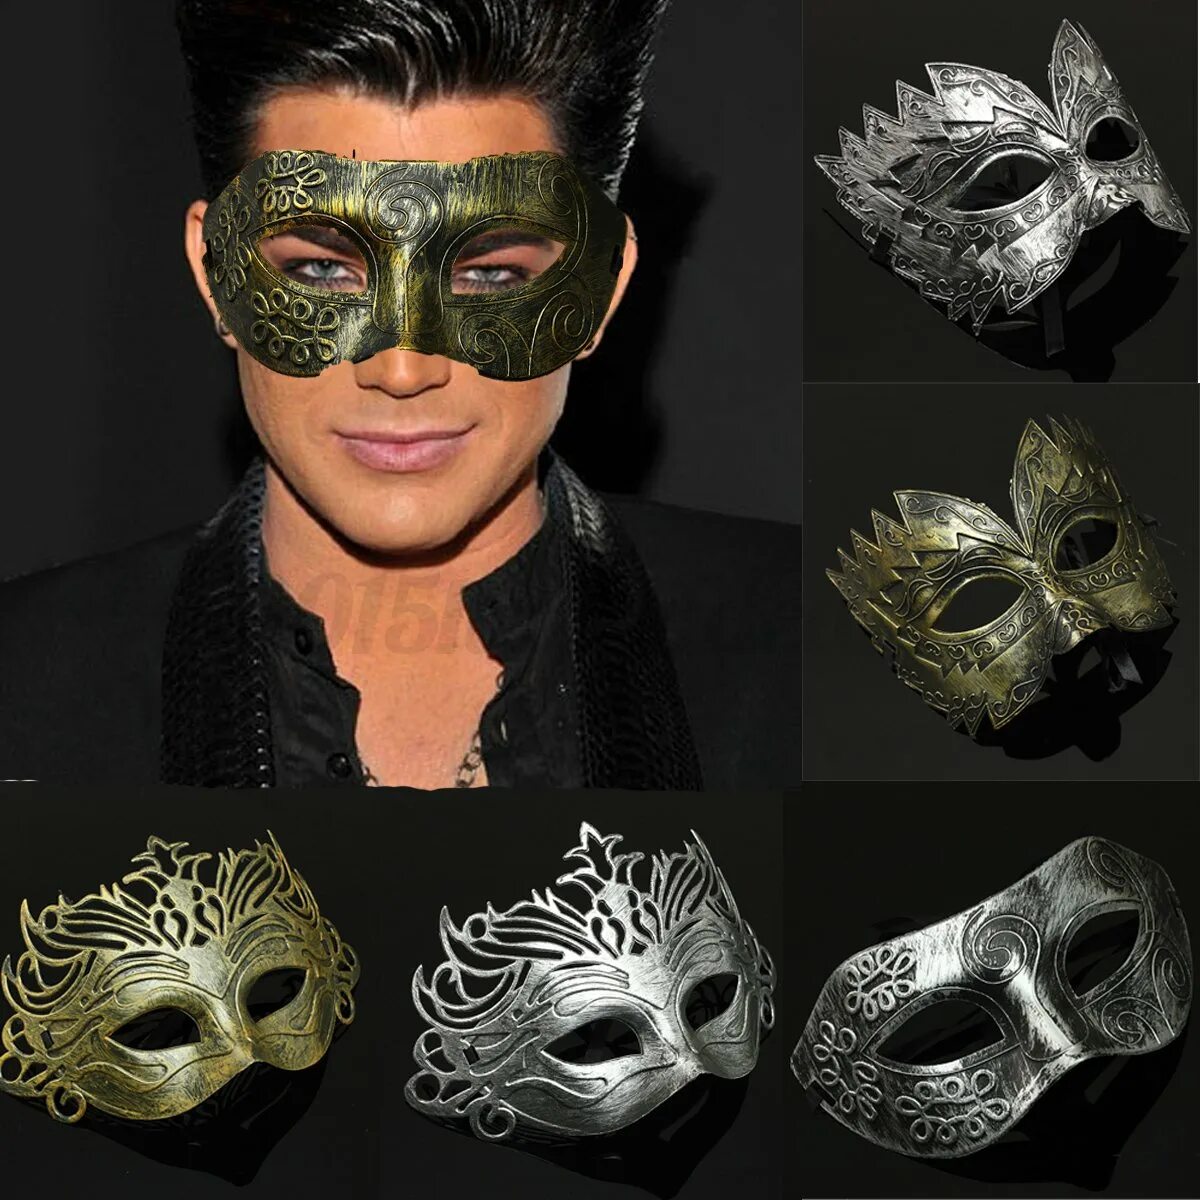 Маскарадная маска мужская. Мужчина в маскарадной маске. Мужская маска для маскарада. Карнавальная маска «мужчина».